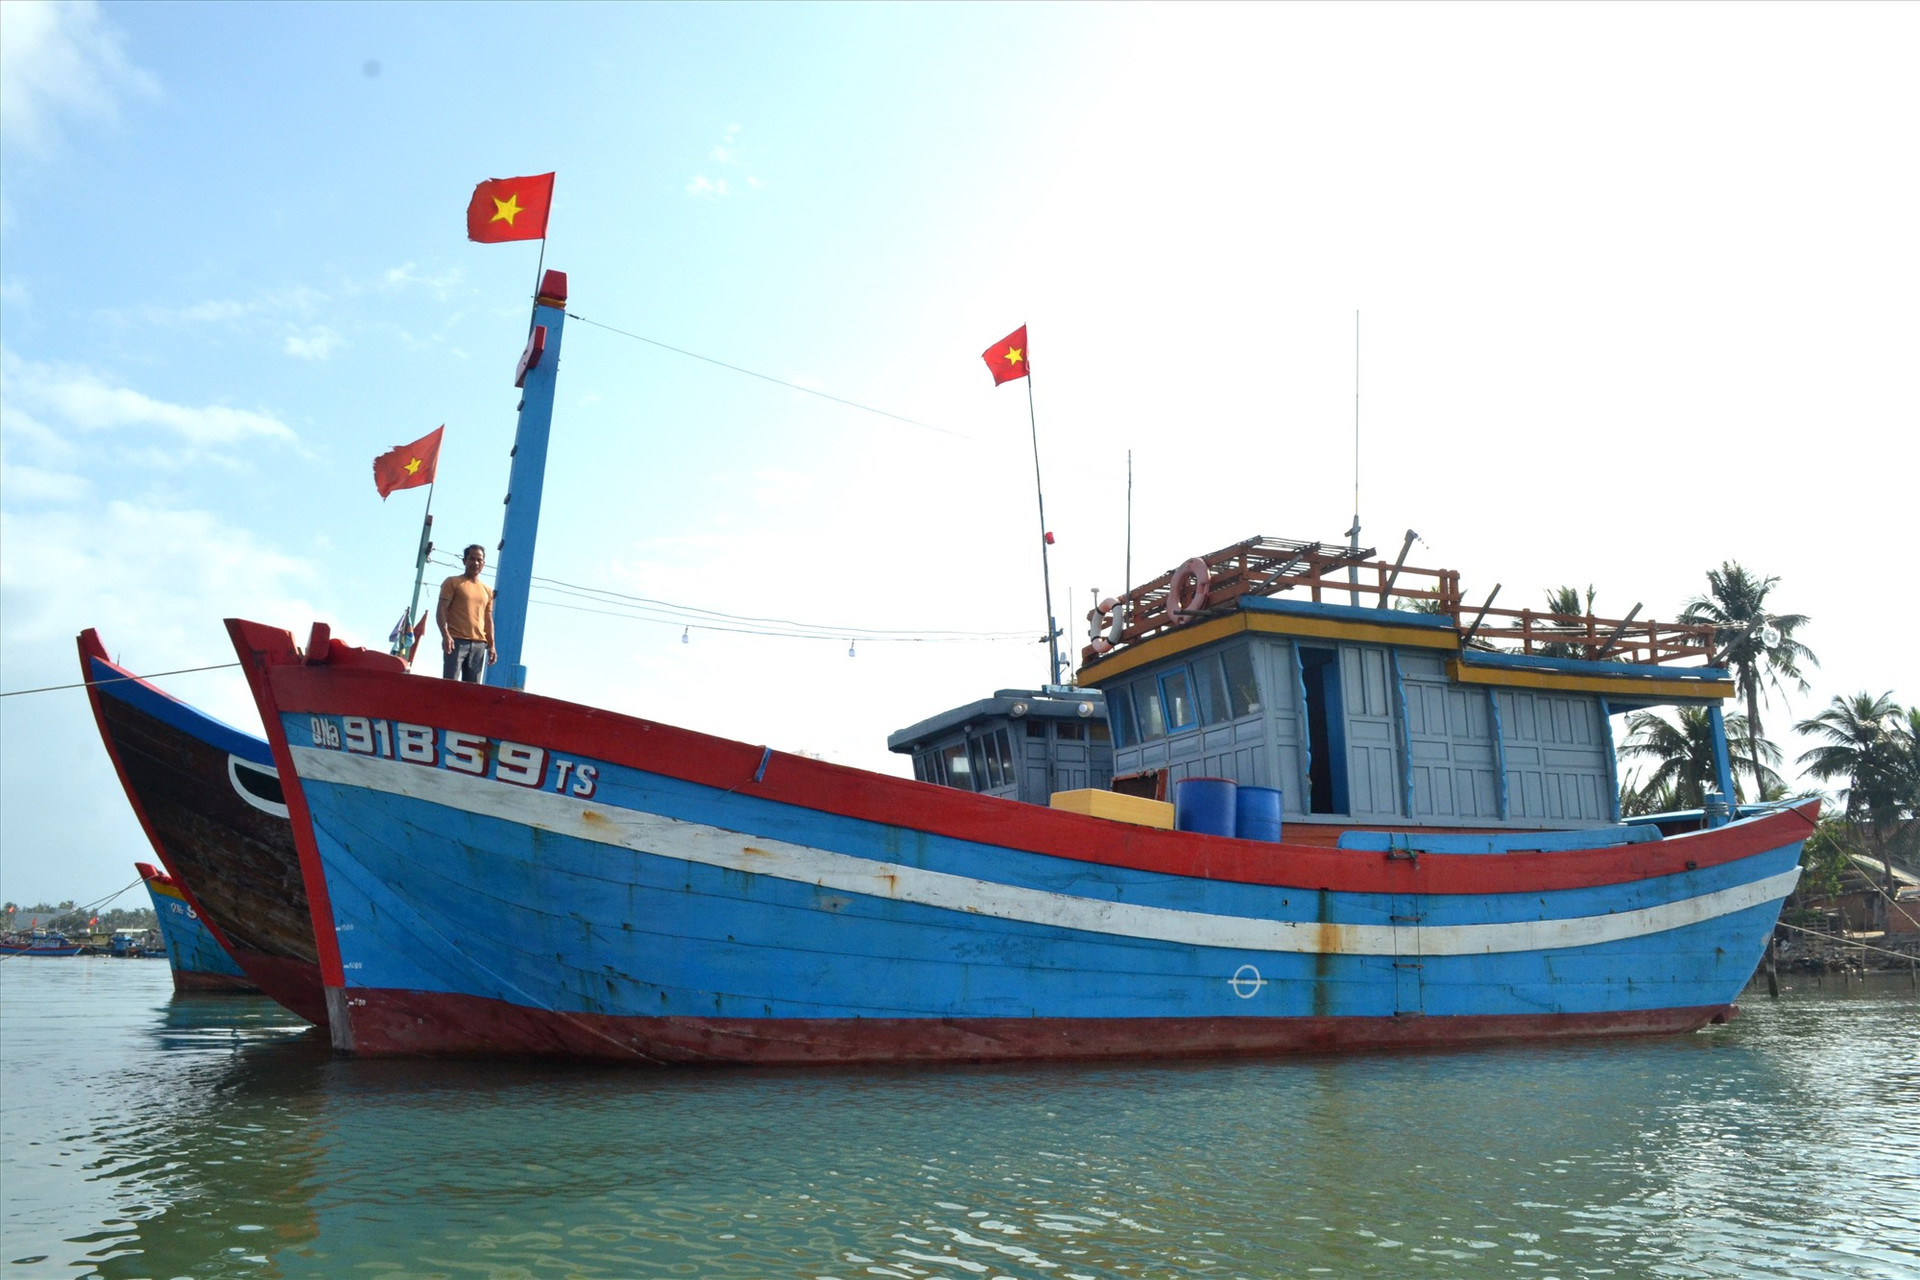 Ngư dân Trần Văn Chung trả nợ đúng hạn sau khi vay vốn của Quỹ HTND để đóng tàu cá QNa-91859. Ảnh: VIỆT NGUYỄN